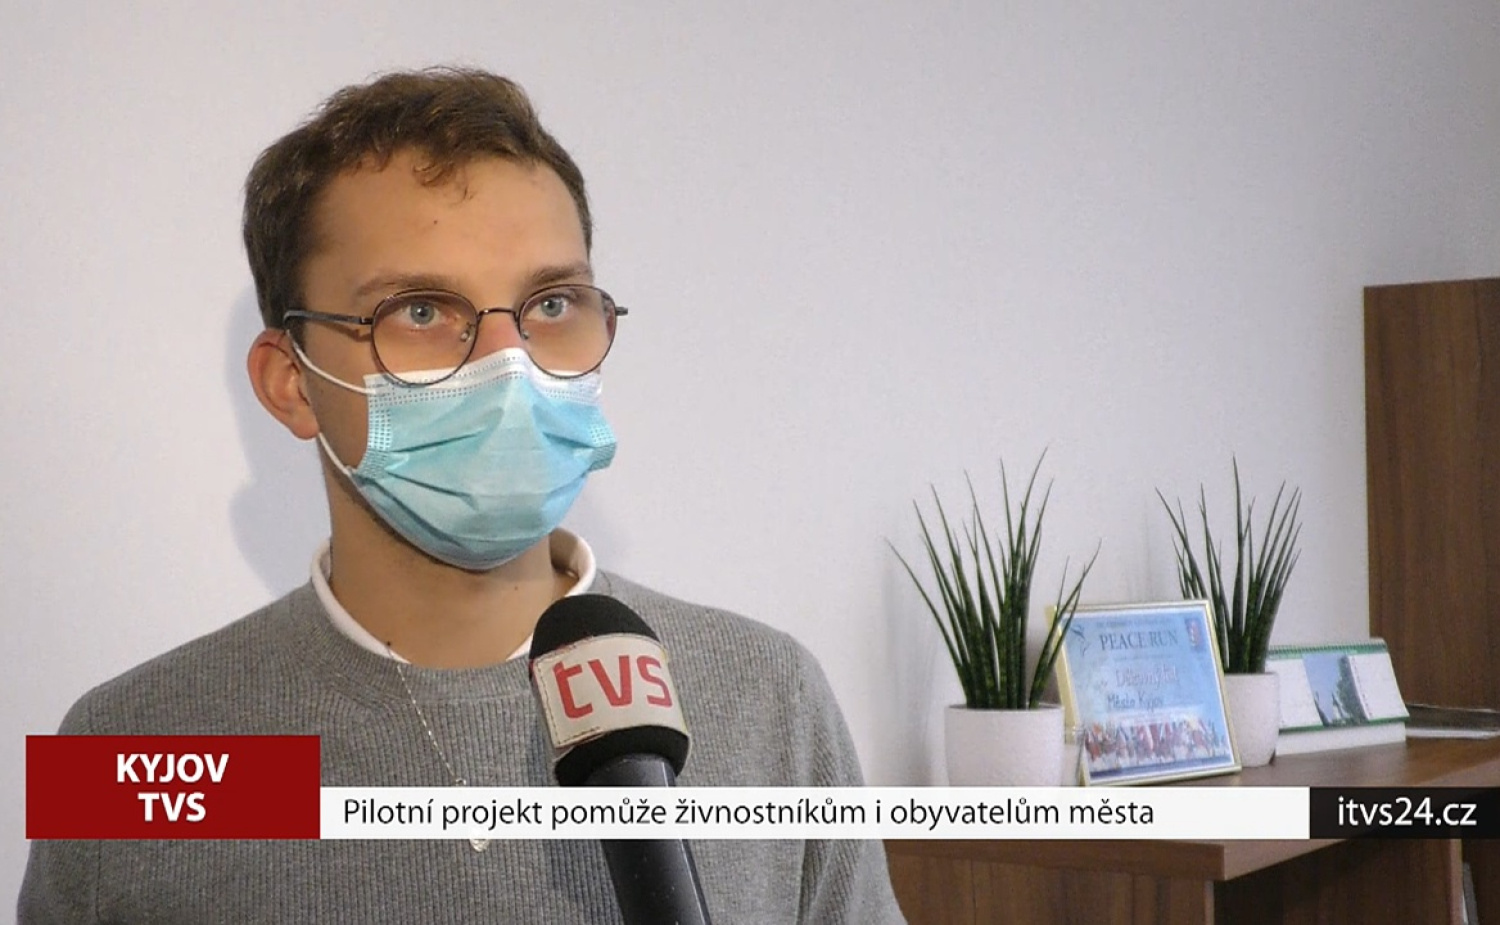 TV Slovacko report on Corrency in Kyjov